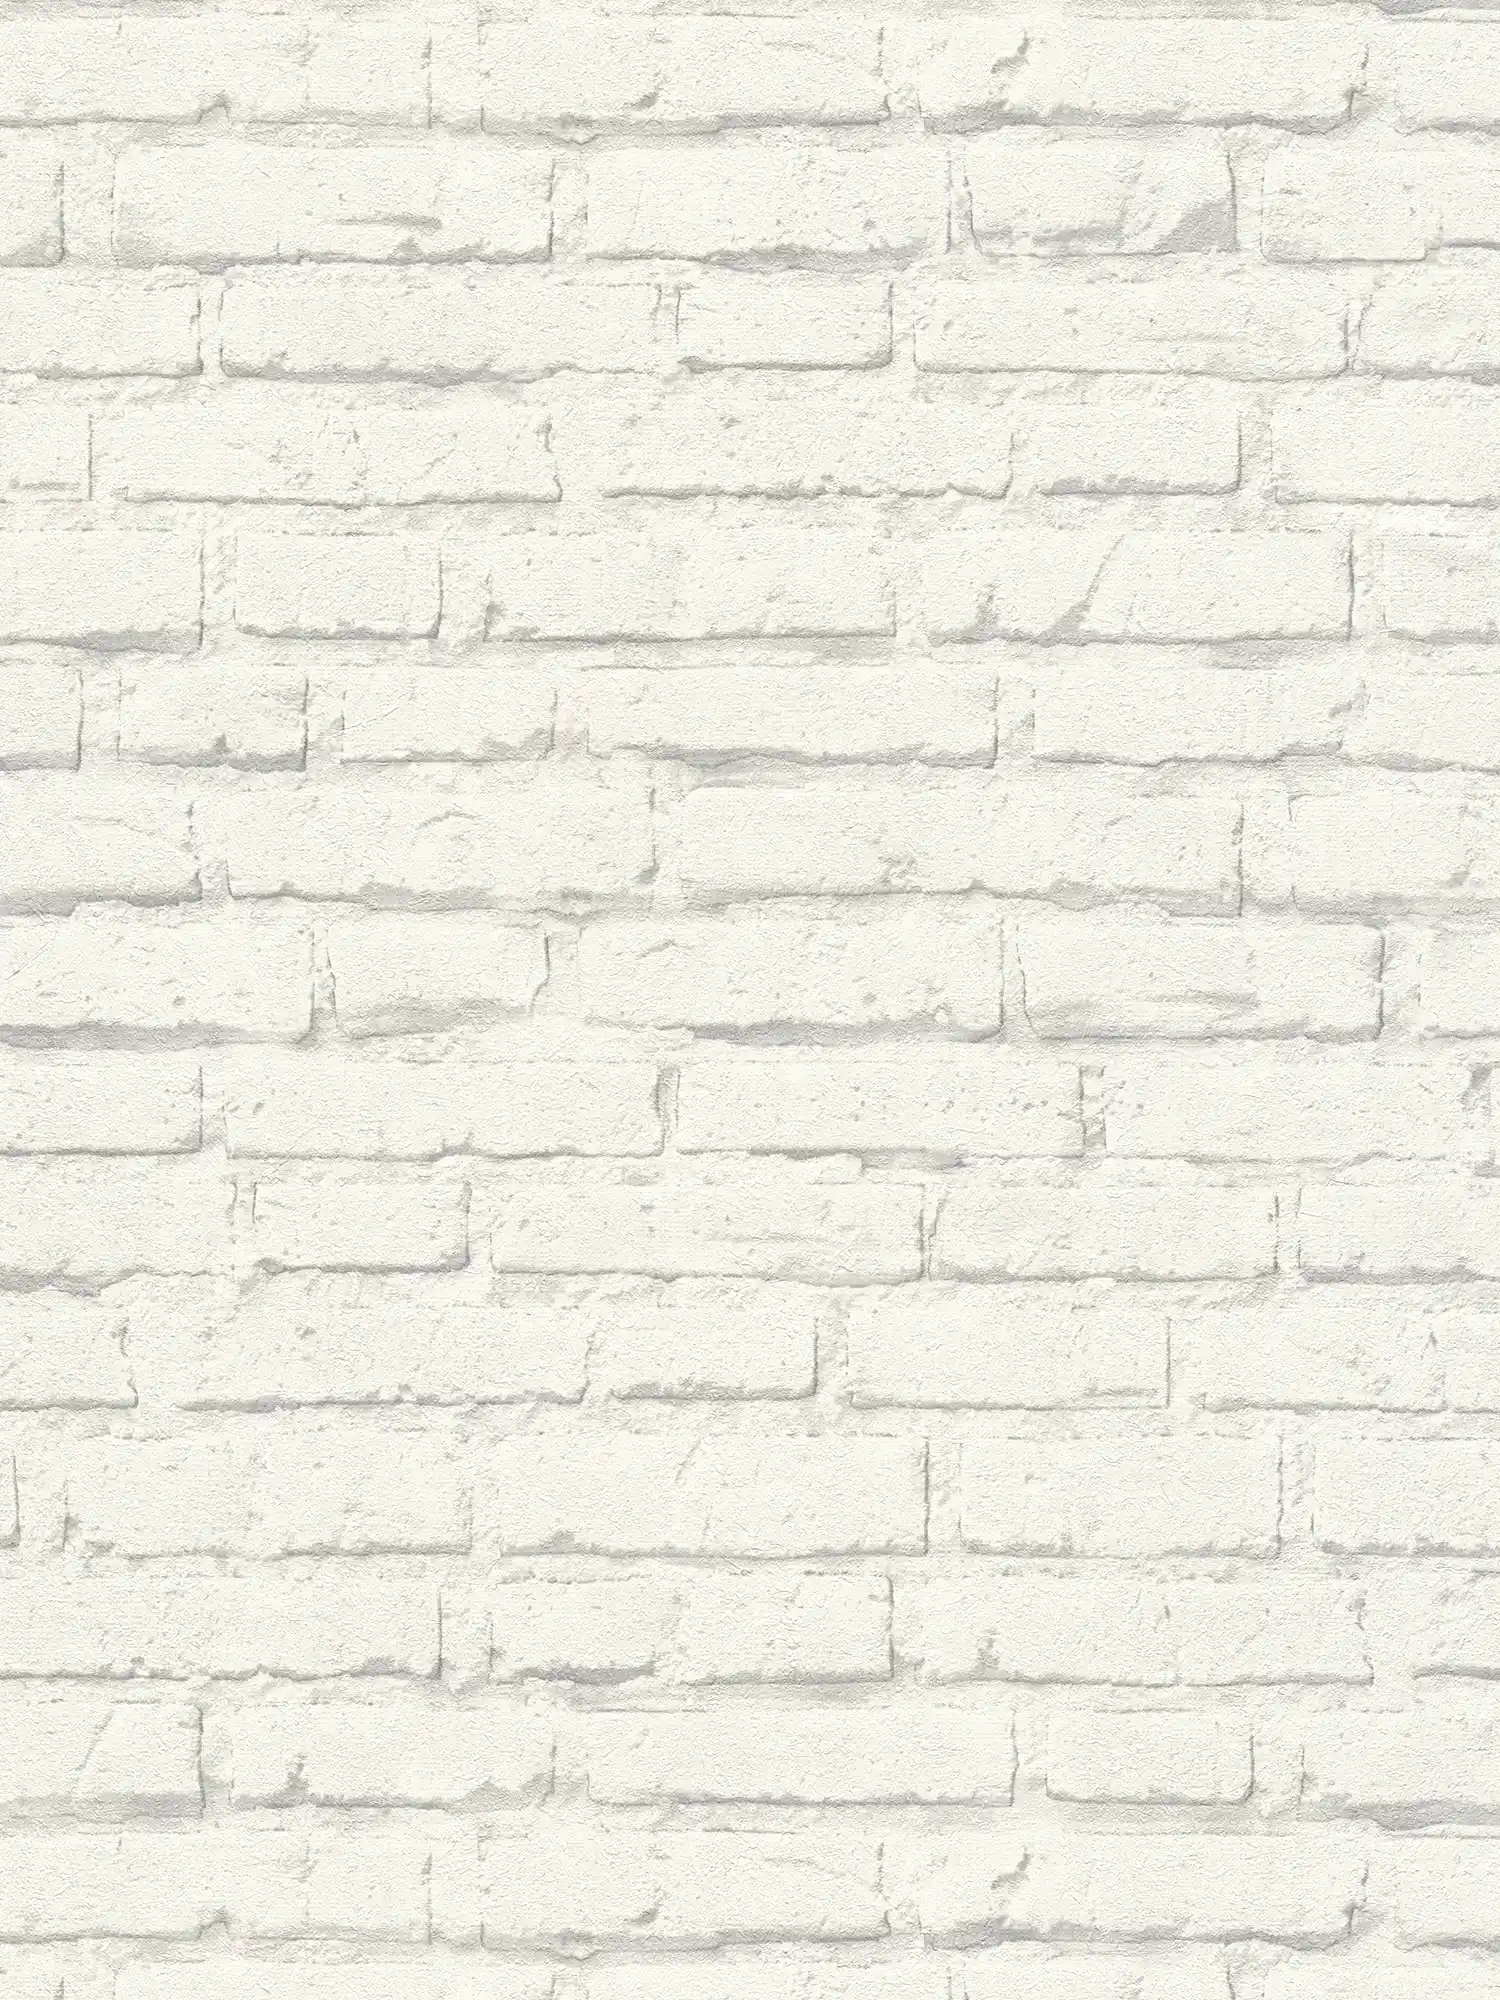 Carta da parati in pietra, muro di mattoni bianchi con motivo strutturato - Grigio, bianco
